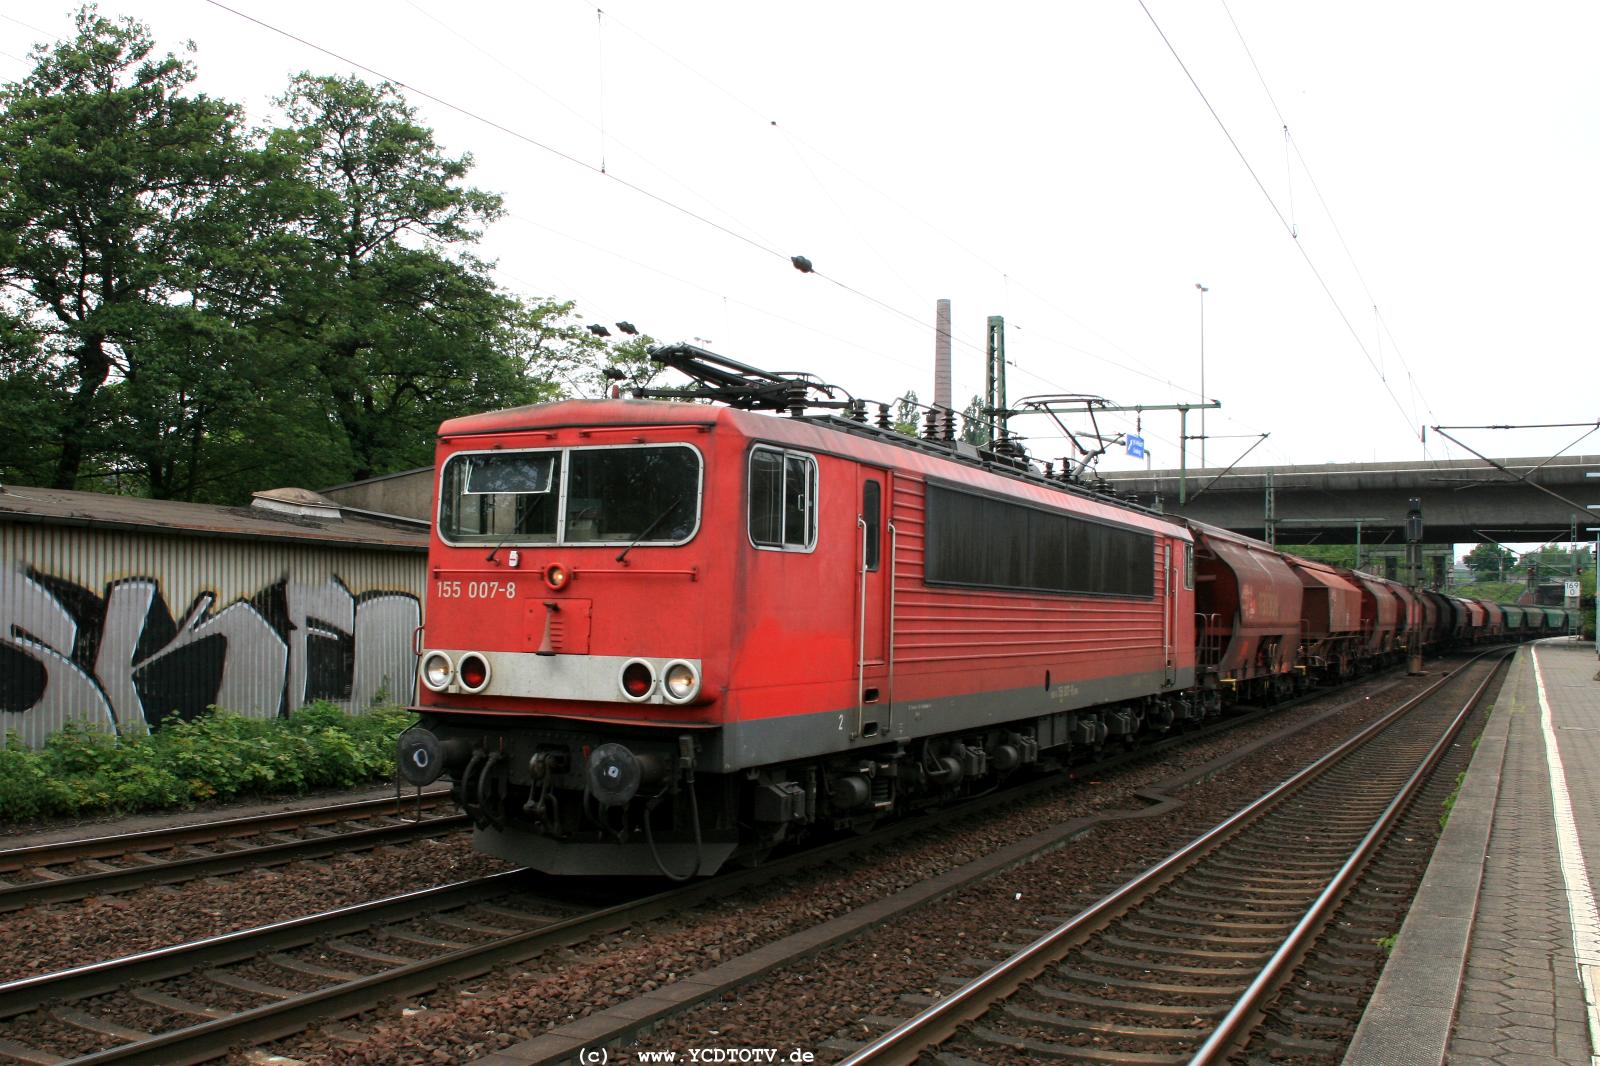  Bahnhof Hamburg-Harburg, 18.05.2011, 15:04 155 007-8 Richtung Sden 